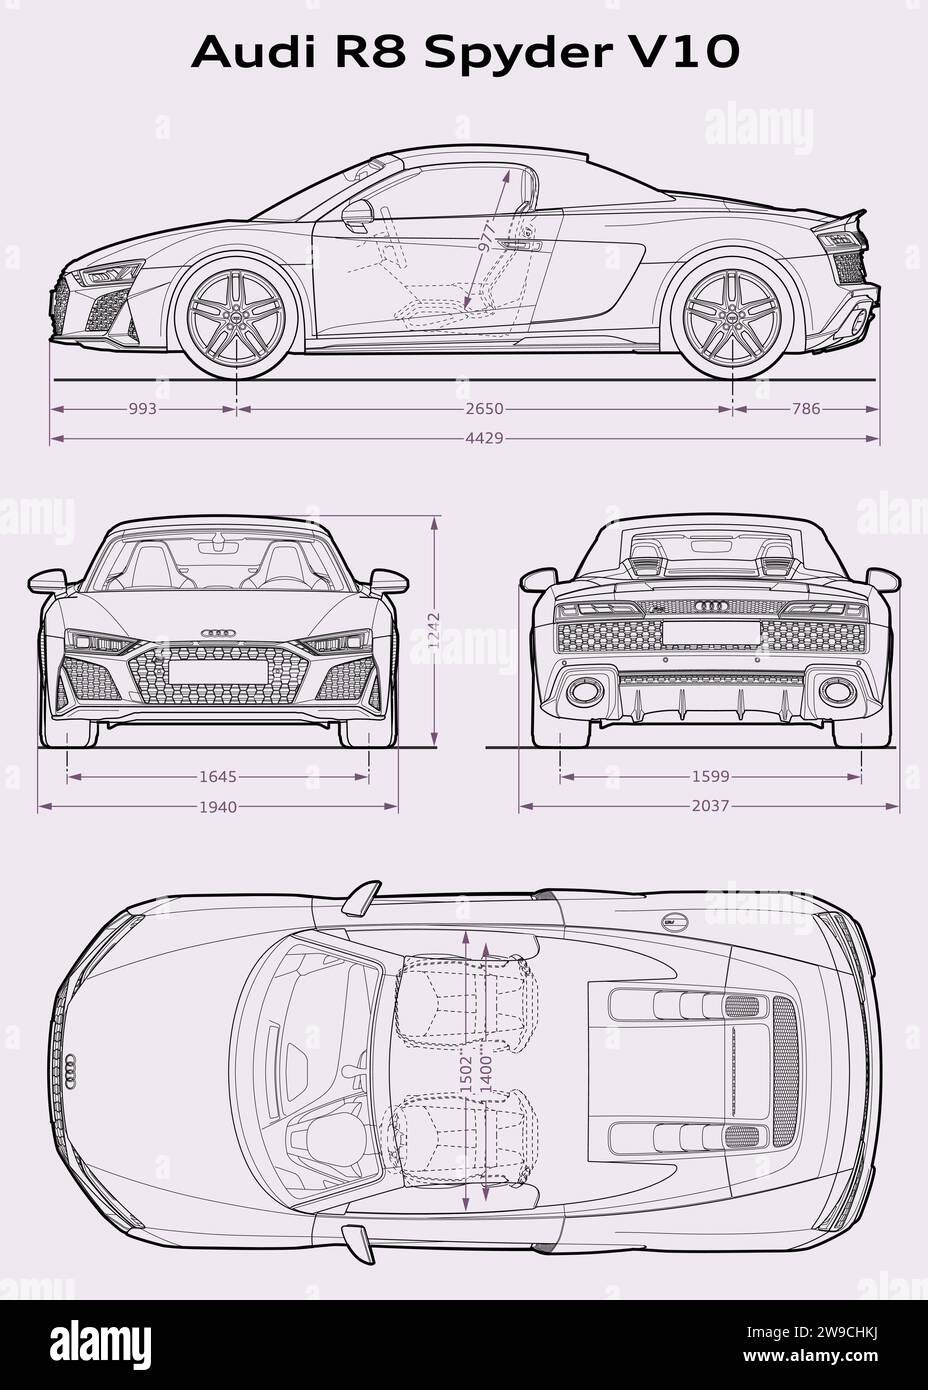 Audi R8 V10 Spider 2019 Bauplan Stock Vektor